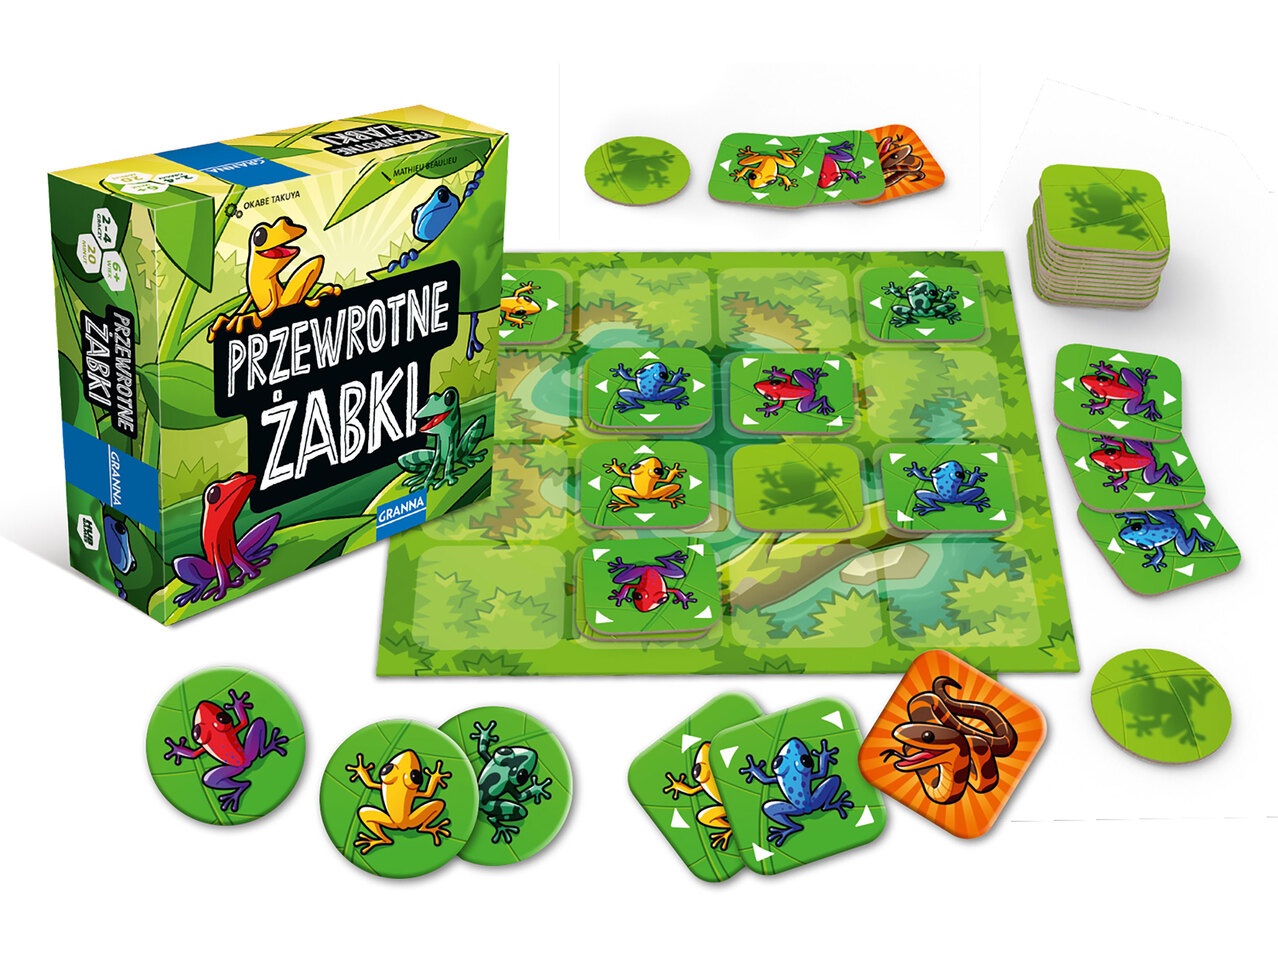 Gra Przewrotne żabki , cena 29,99 PLN 
Gra Przewrotne żabki 
- od 2 do 4 graczy
Gra ...